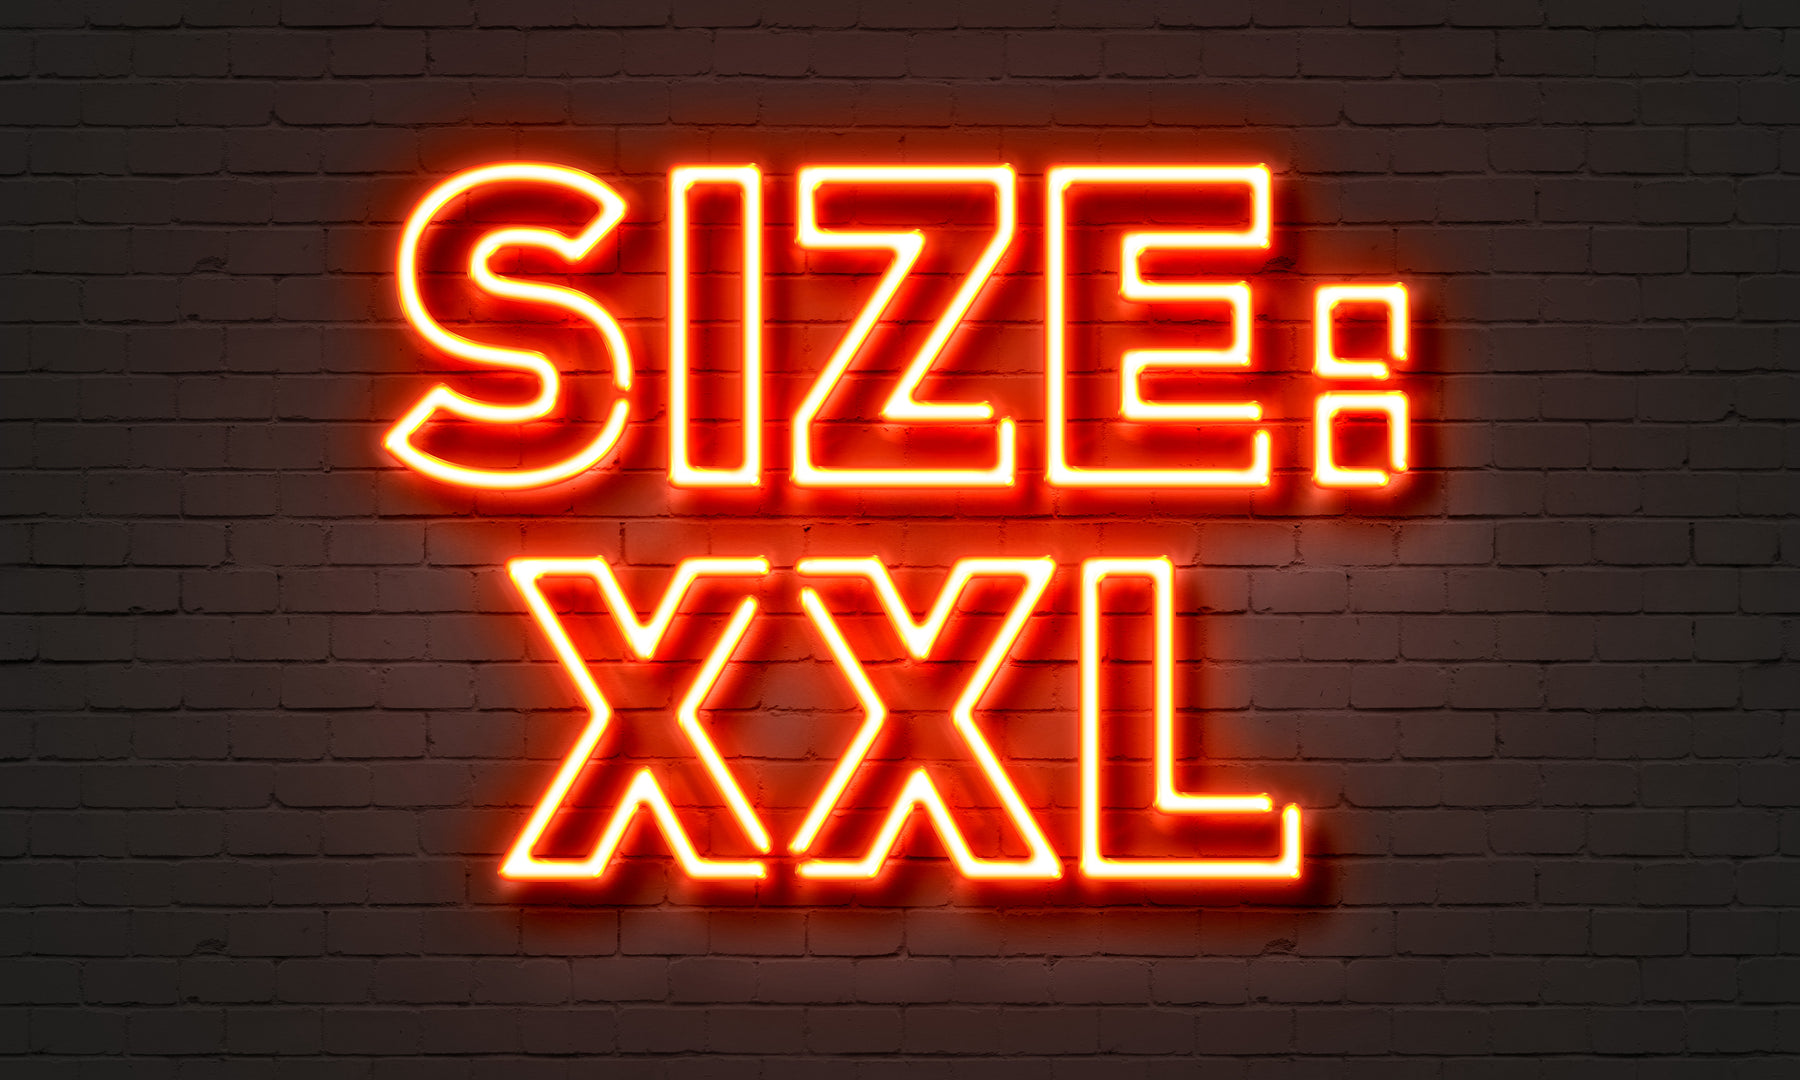 XXL Sizes Hard to Find?